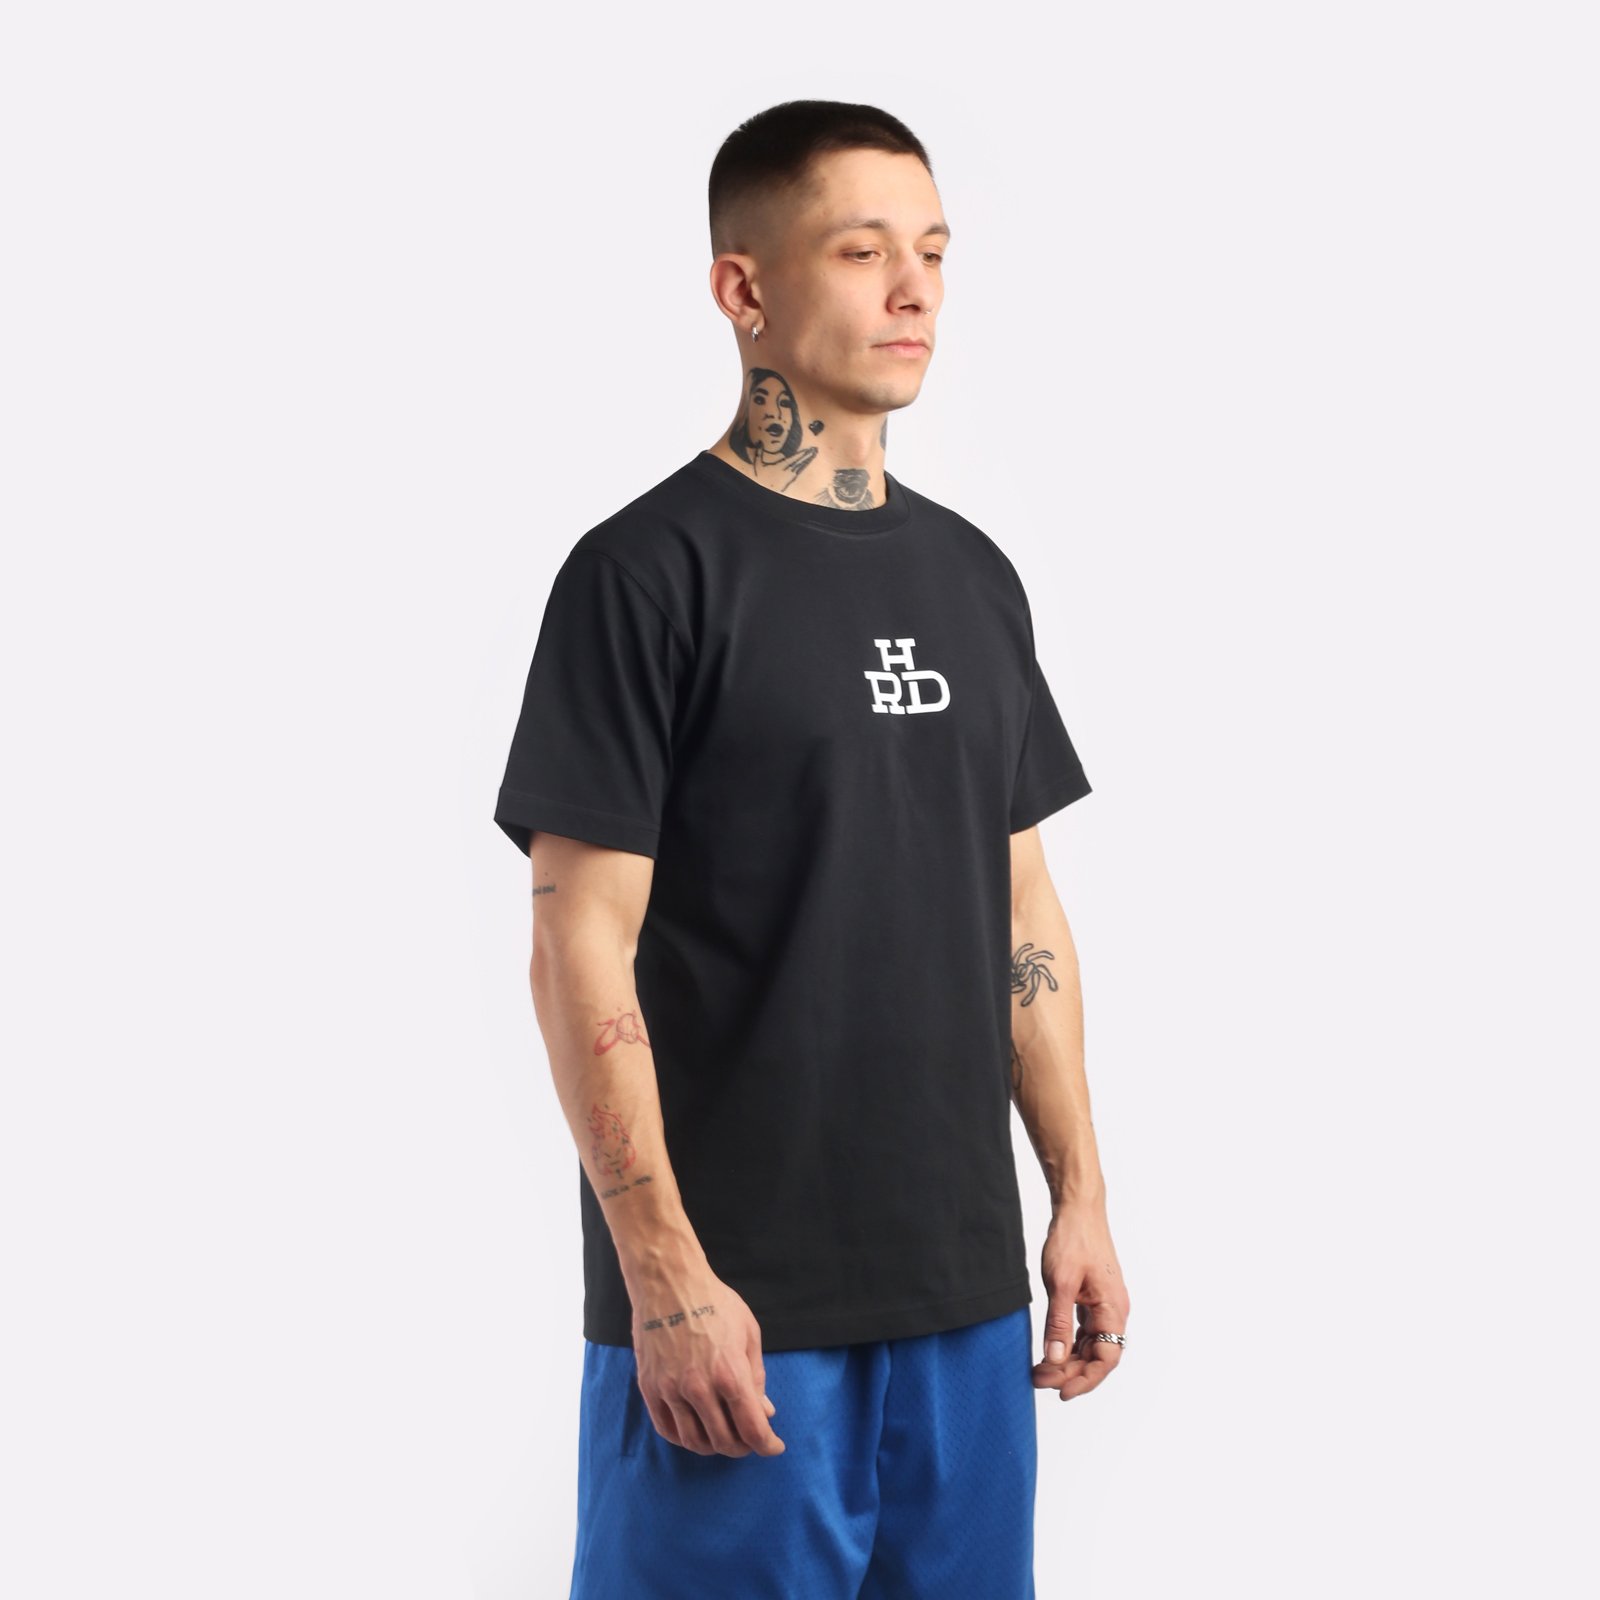 мужская футболка Hard Logo  (Tee hrd-blck)  - цена, описание, фото 3